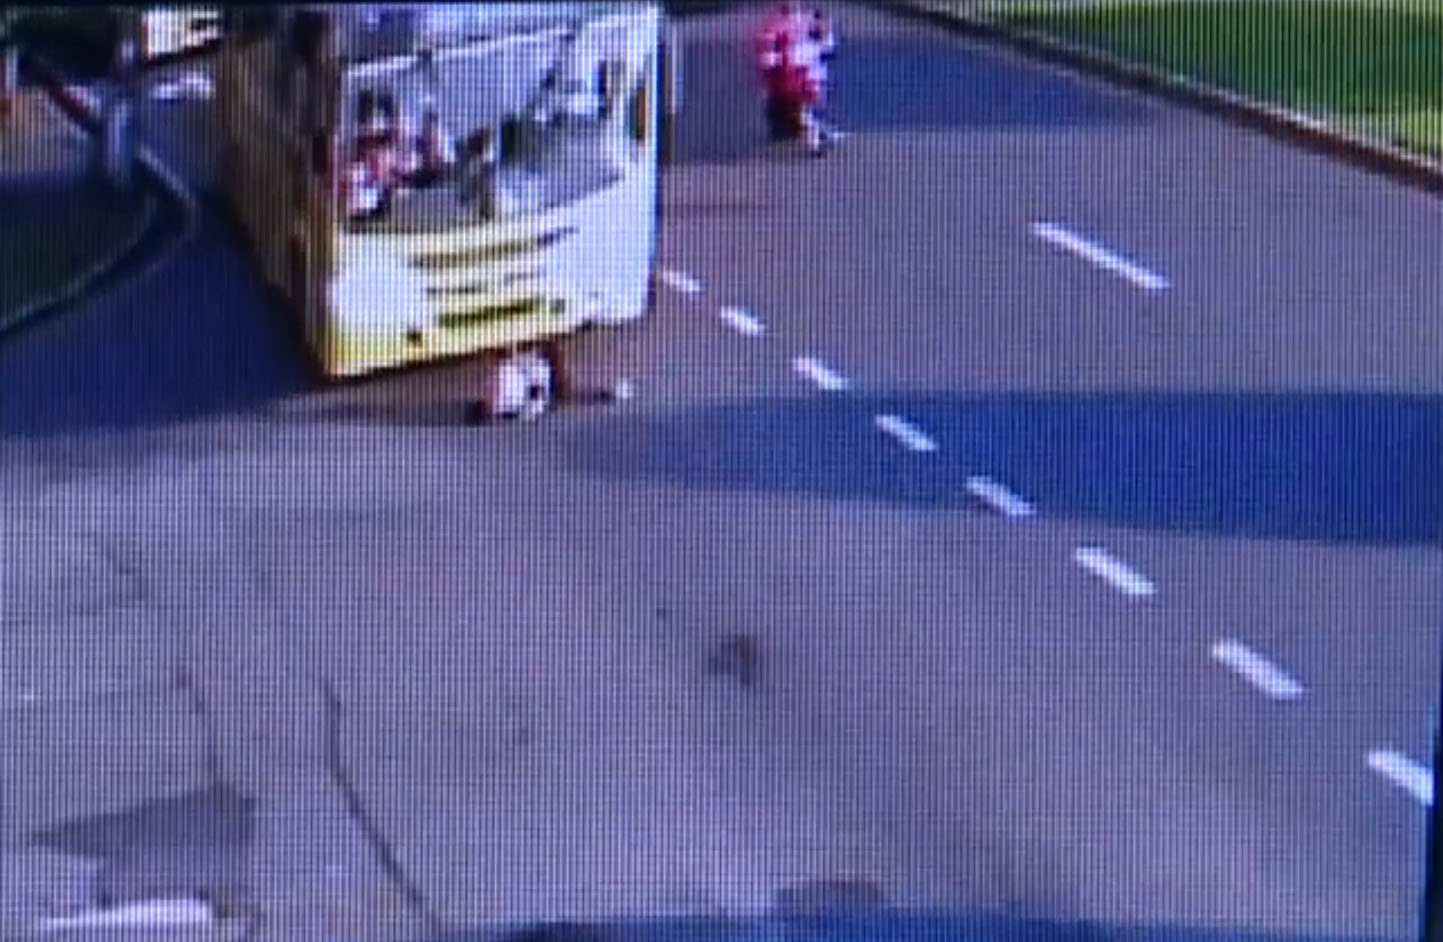 Mulher saiu do canteiro em direção a calçada quando foi atropelada. Foto: Reprodução